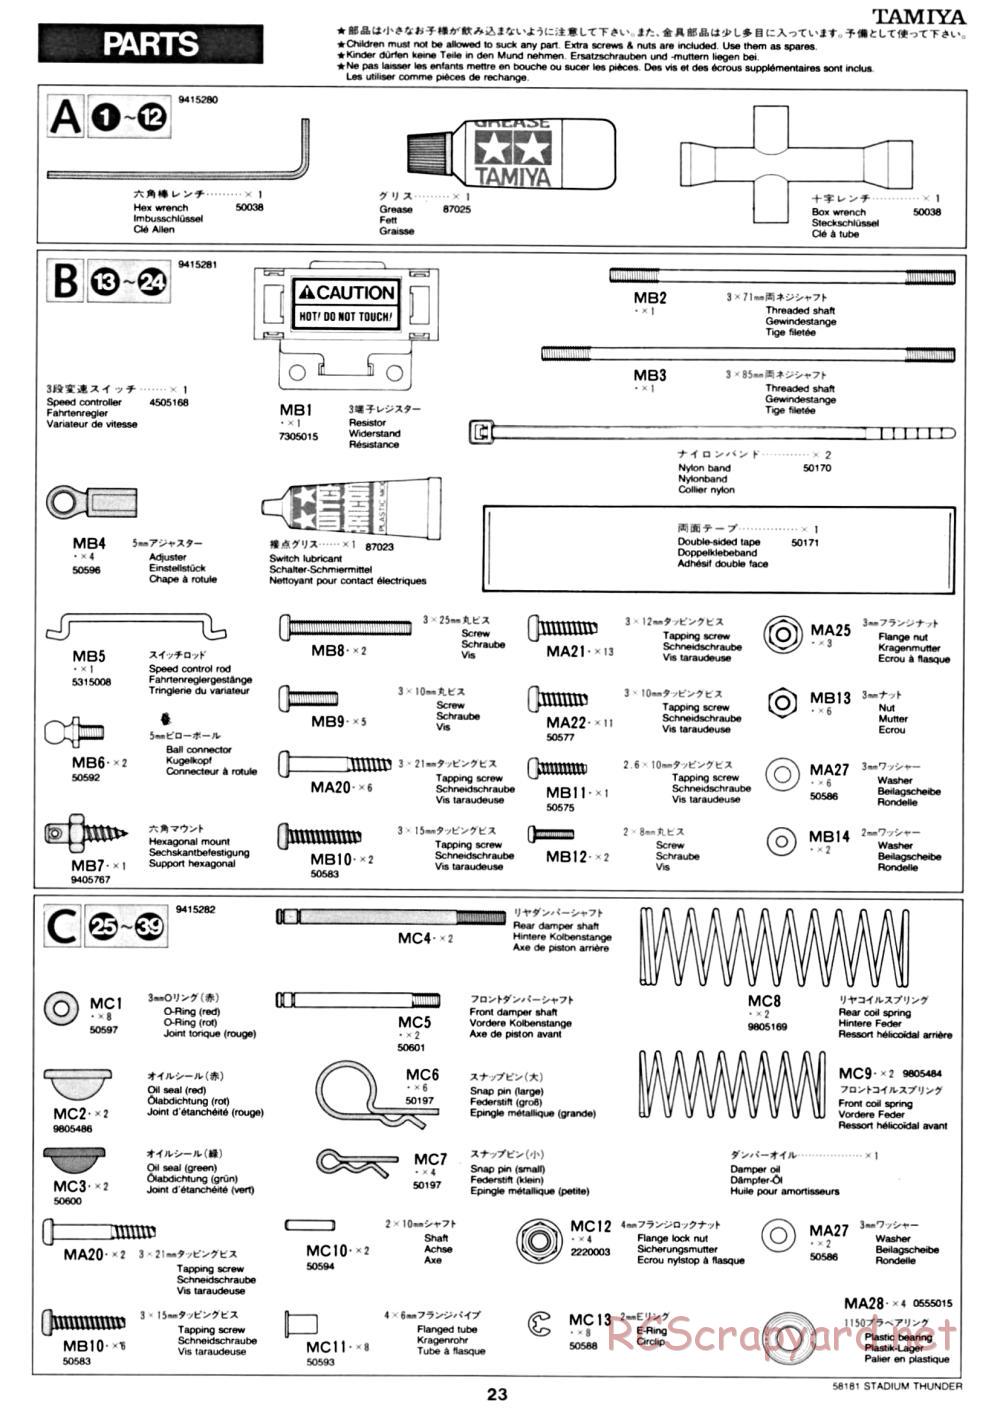 Tamiya - Stadium Thunder Chassis - Manual - Page 23